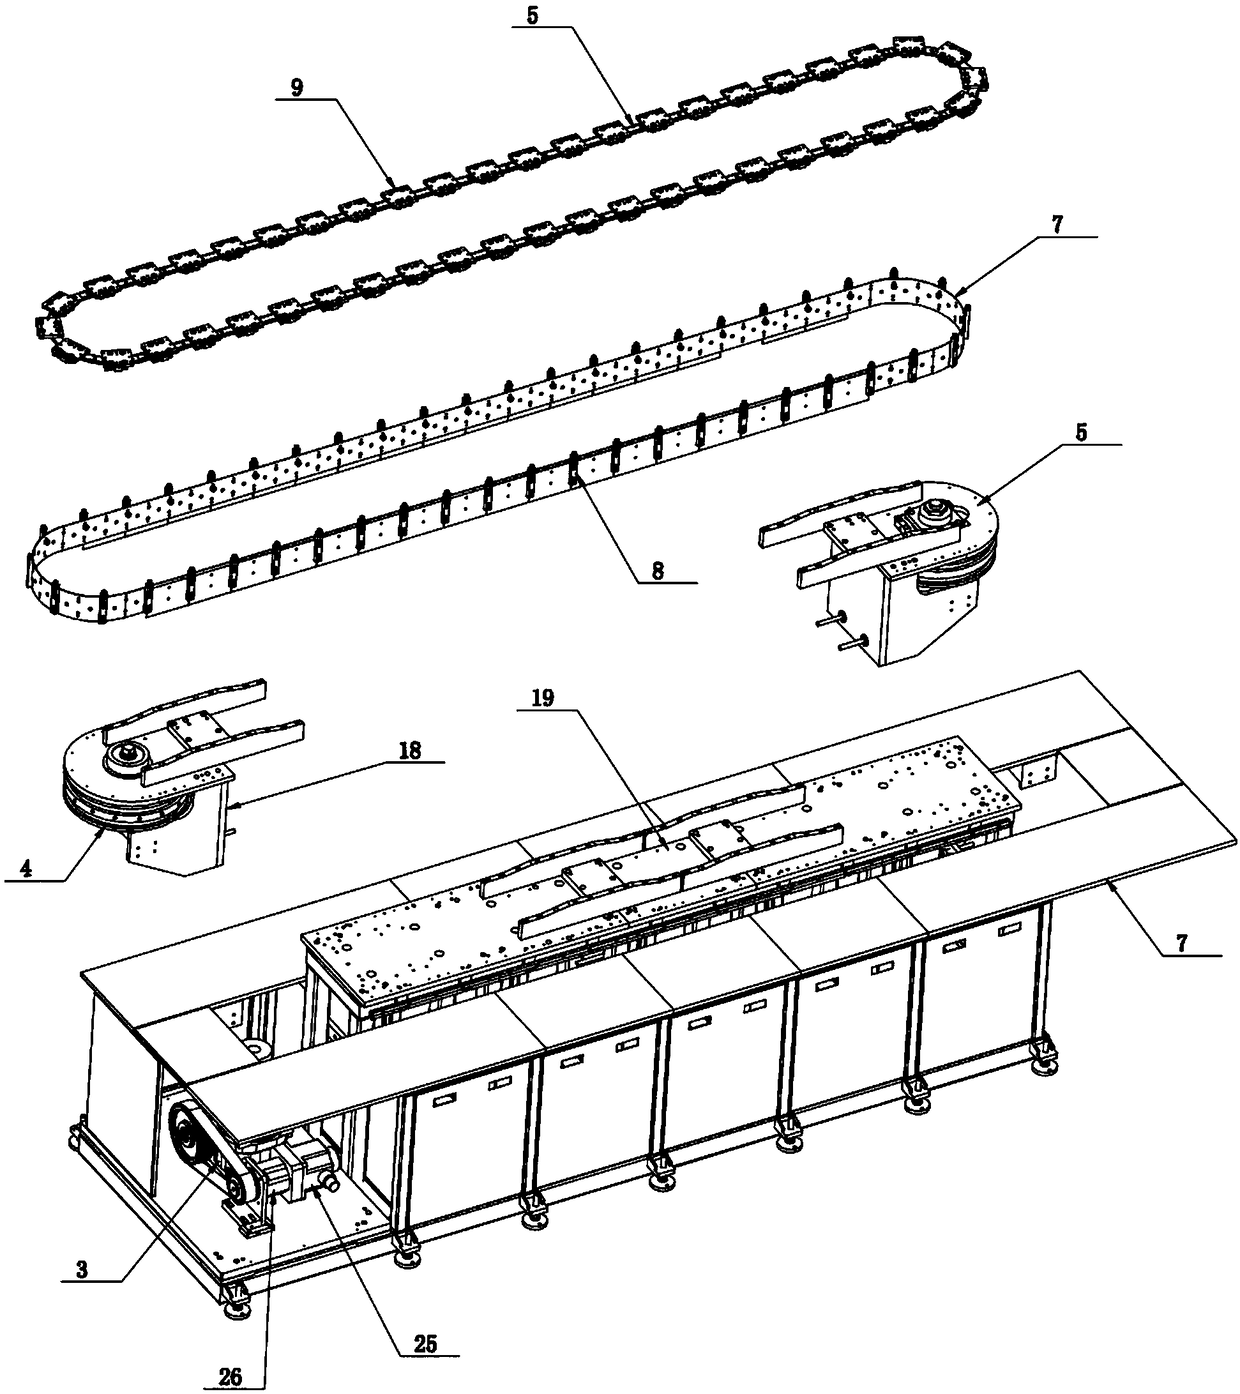 Annular sliding rail type flexible assembly platform